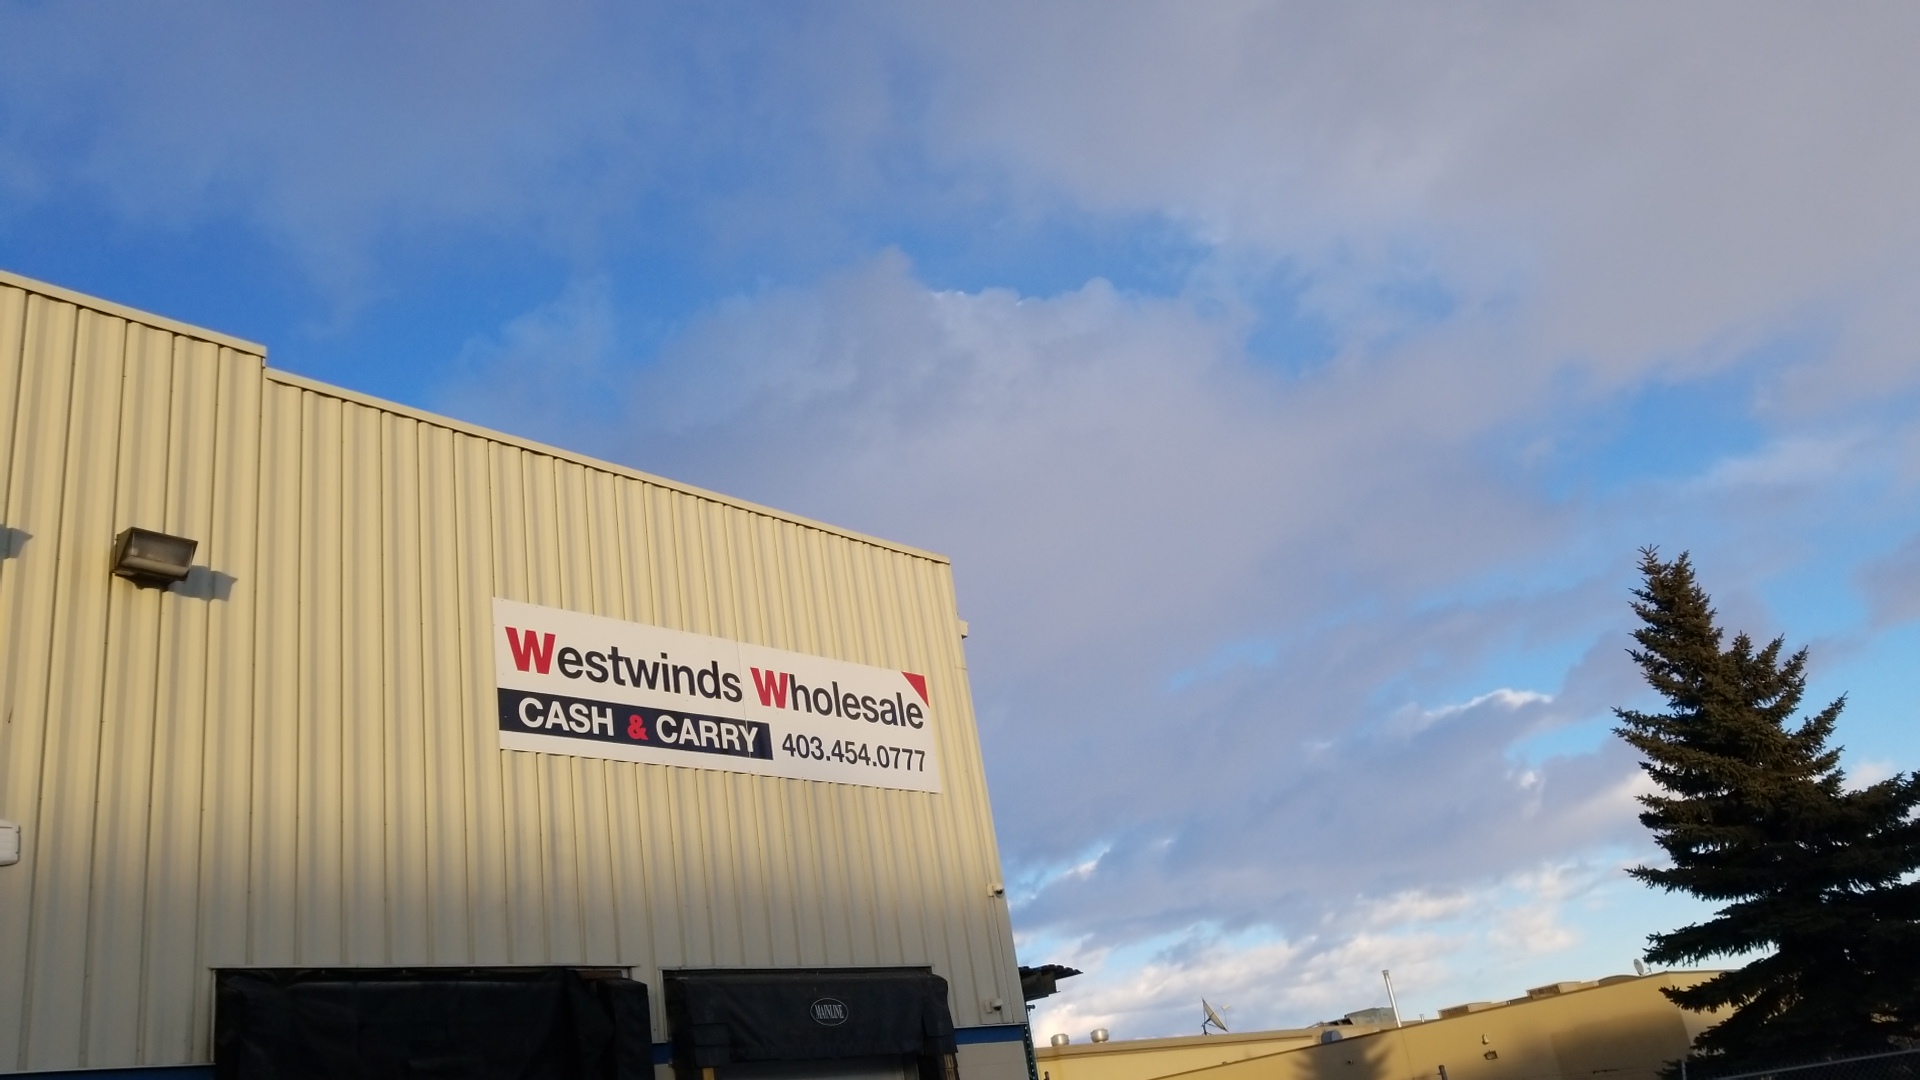 Westwinds Wholesale Cash & Carry | Business | d4u.ca